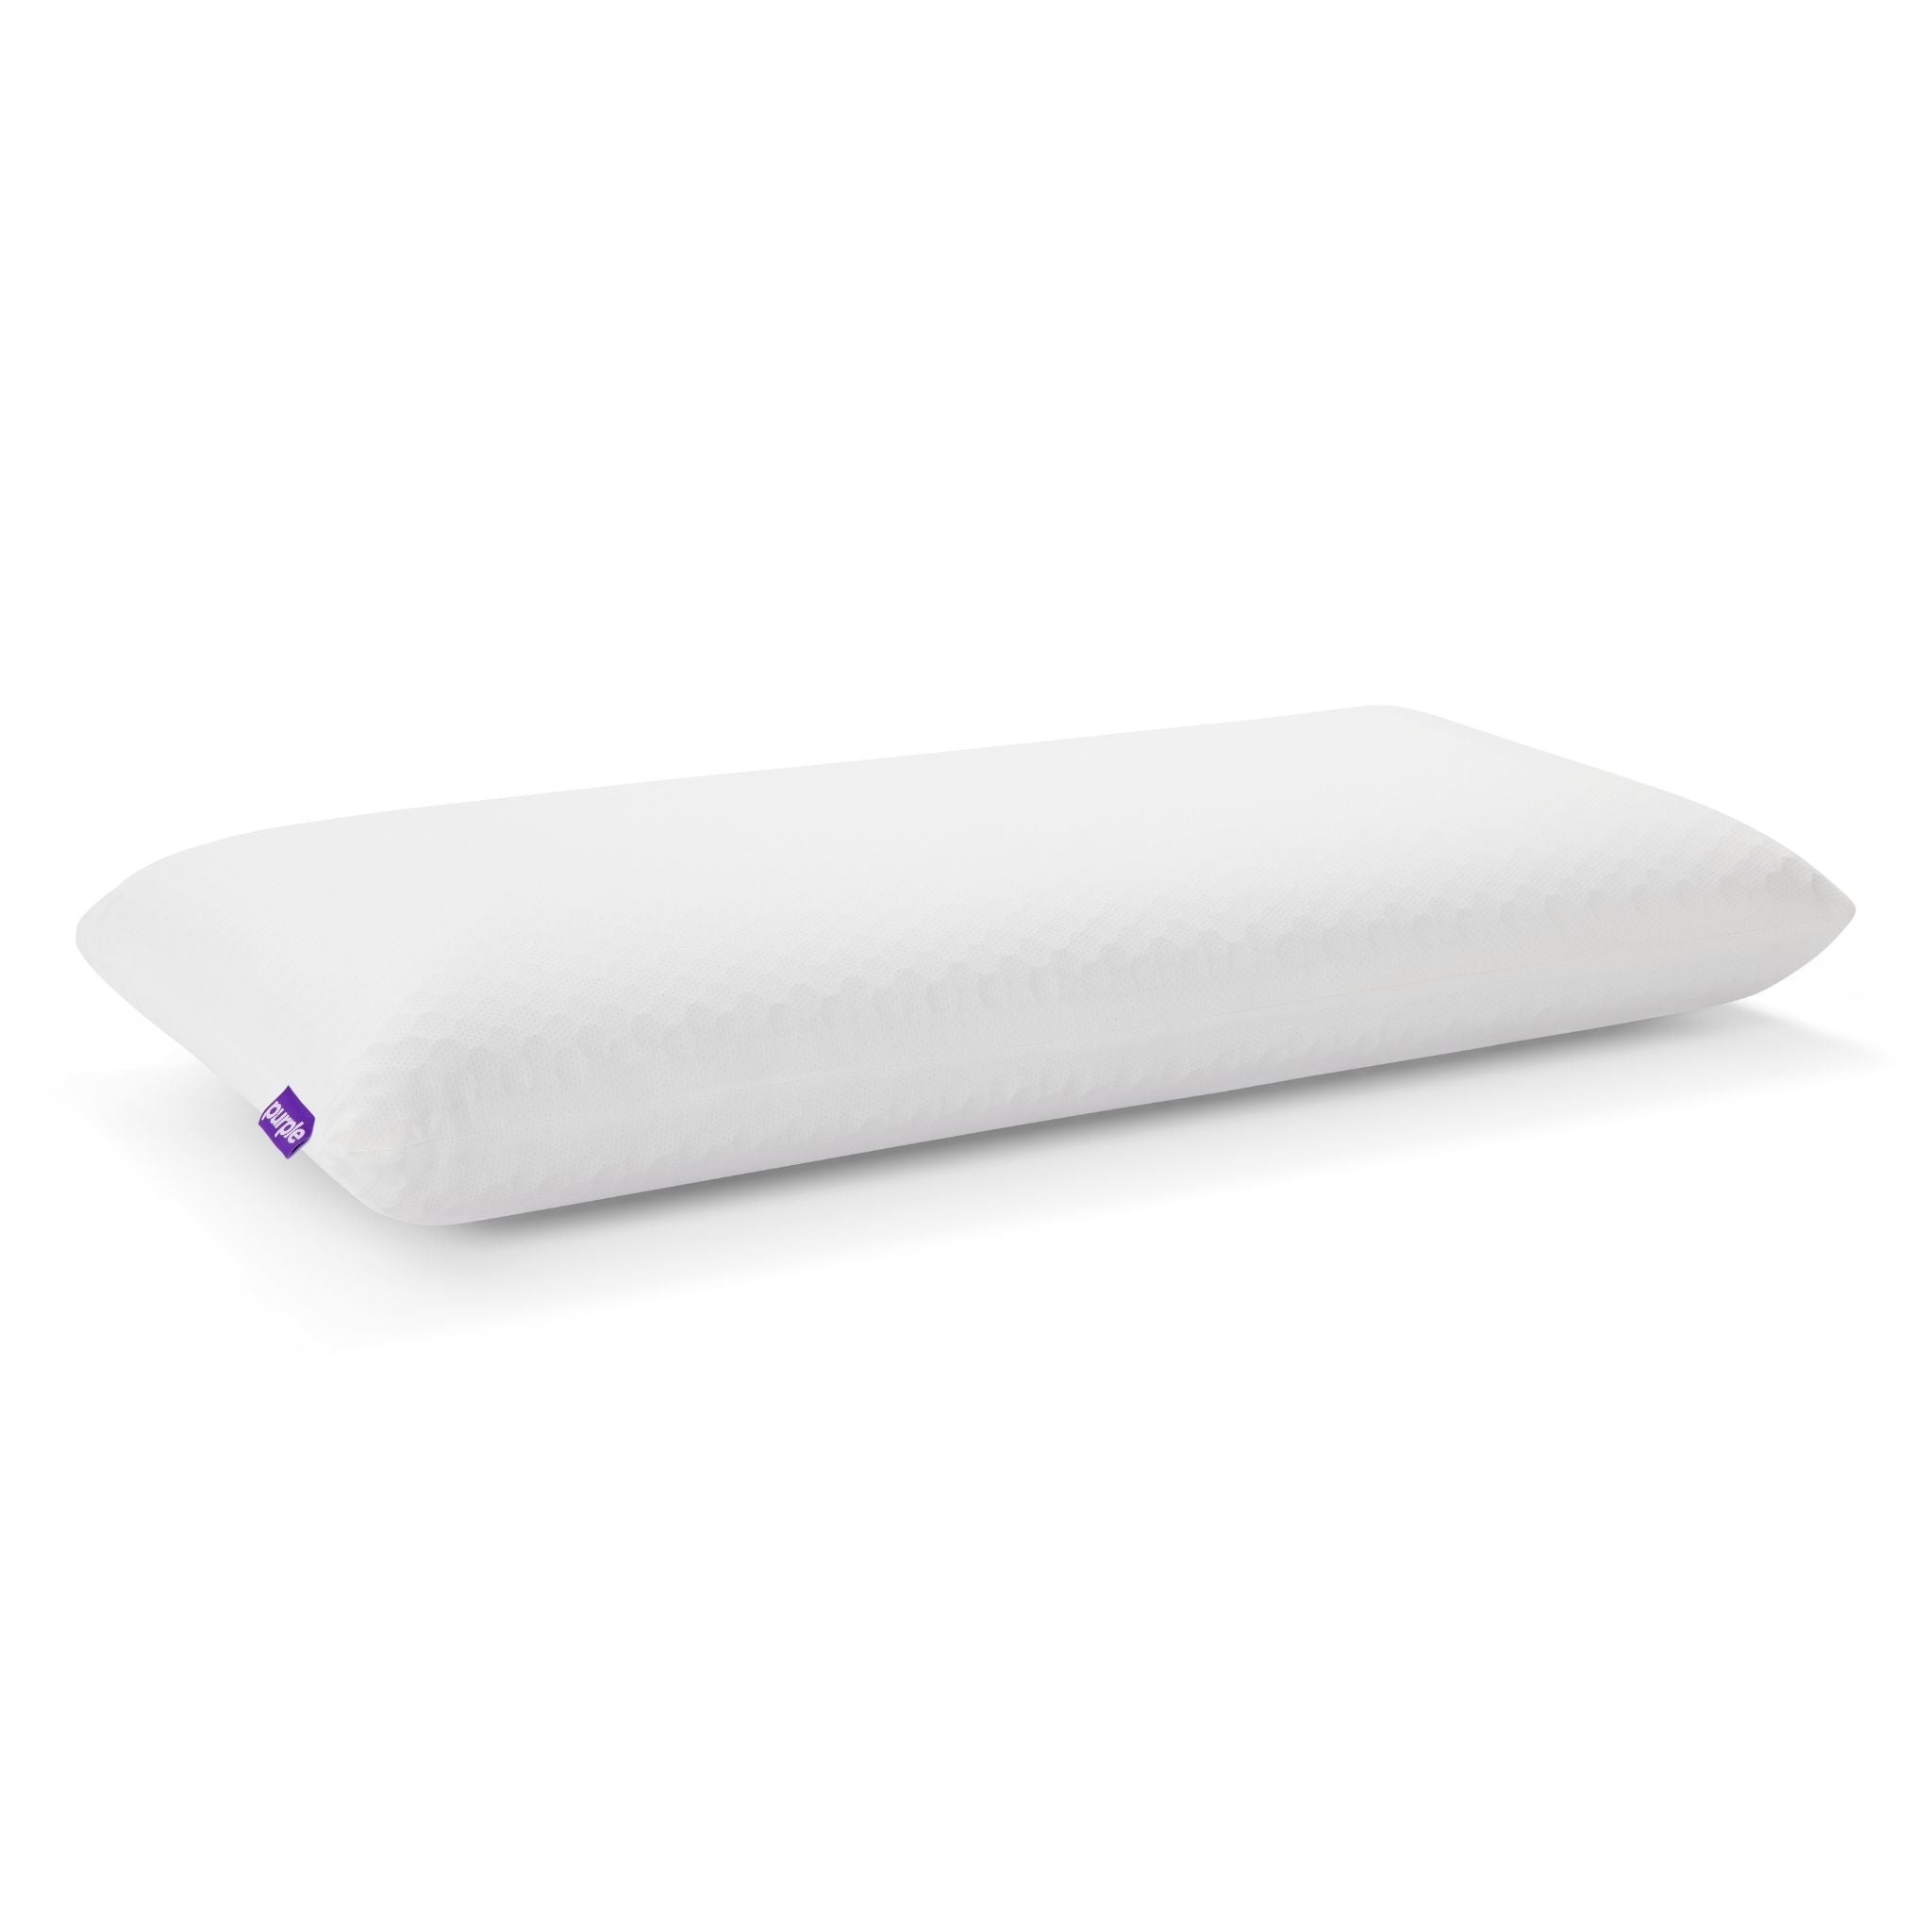 Purple Cloud Pillow (Standard)